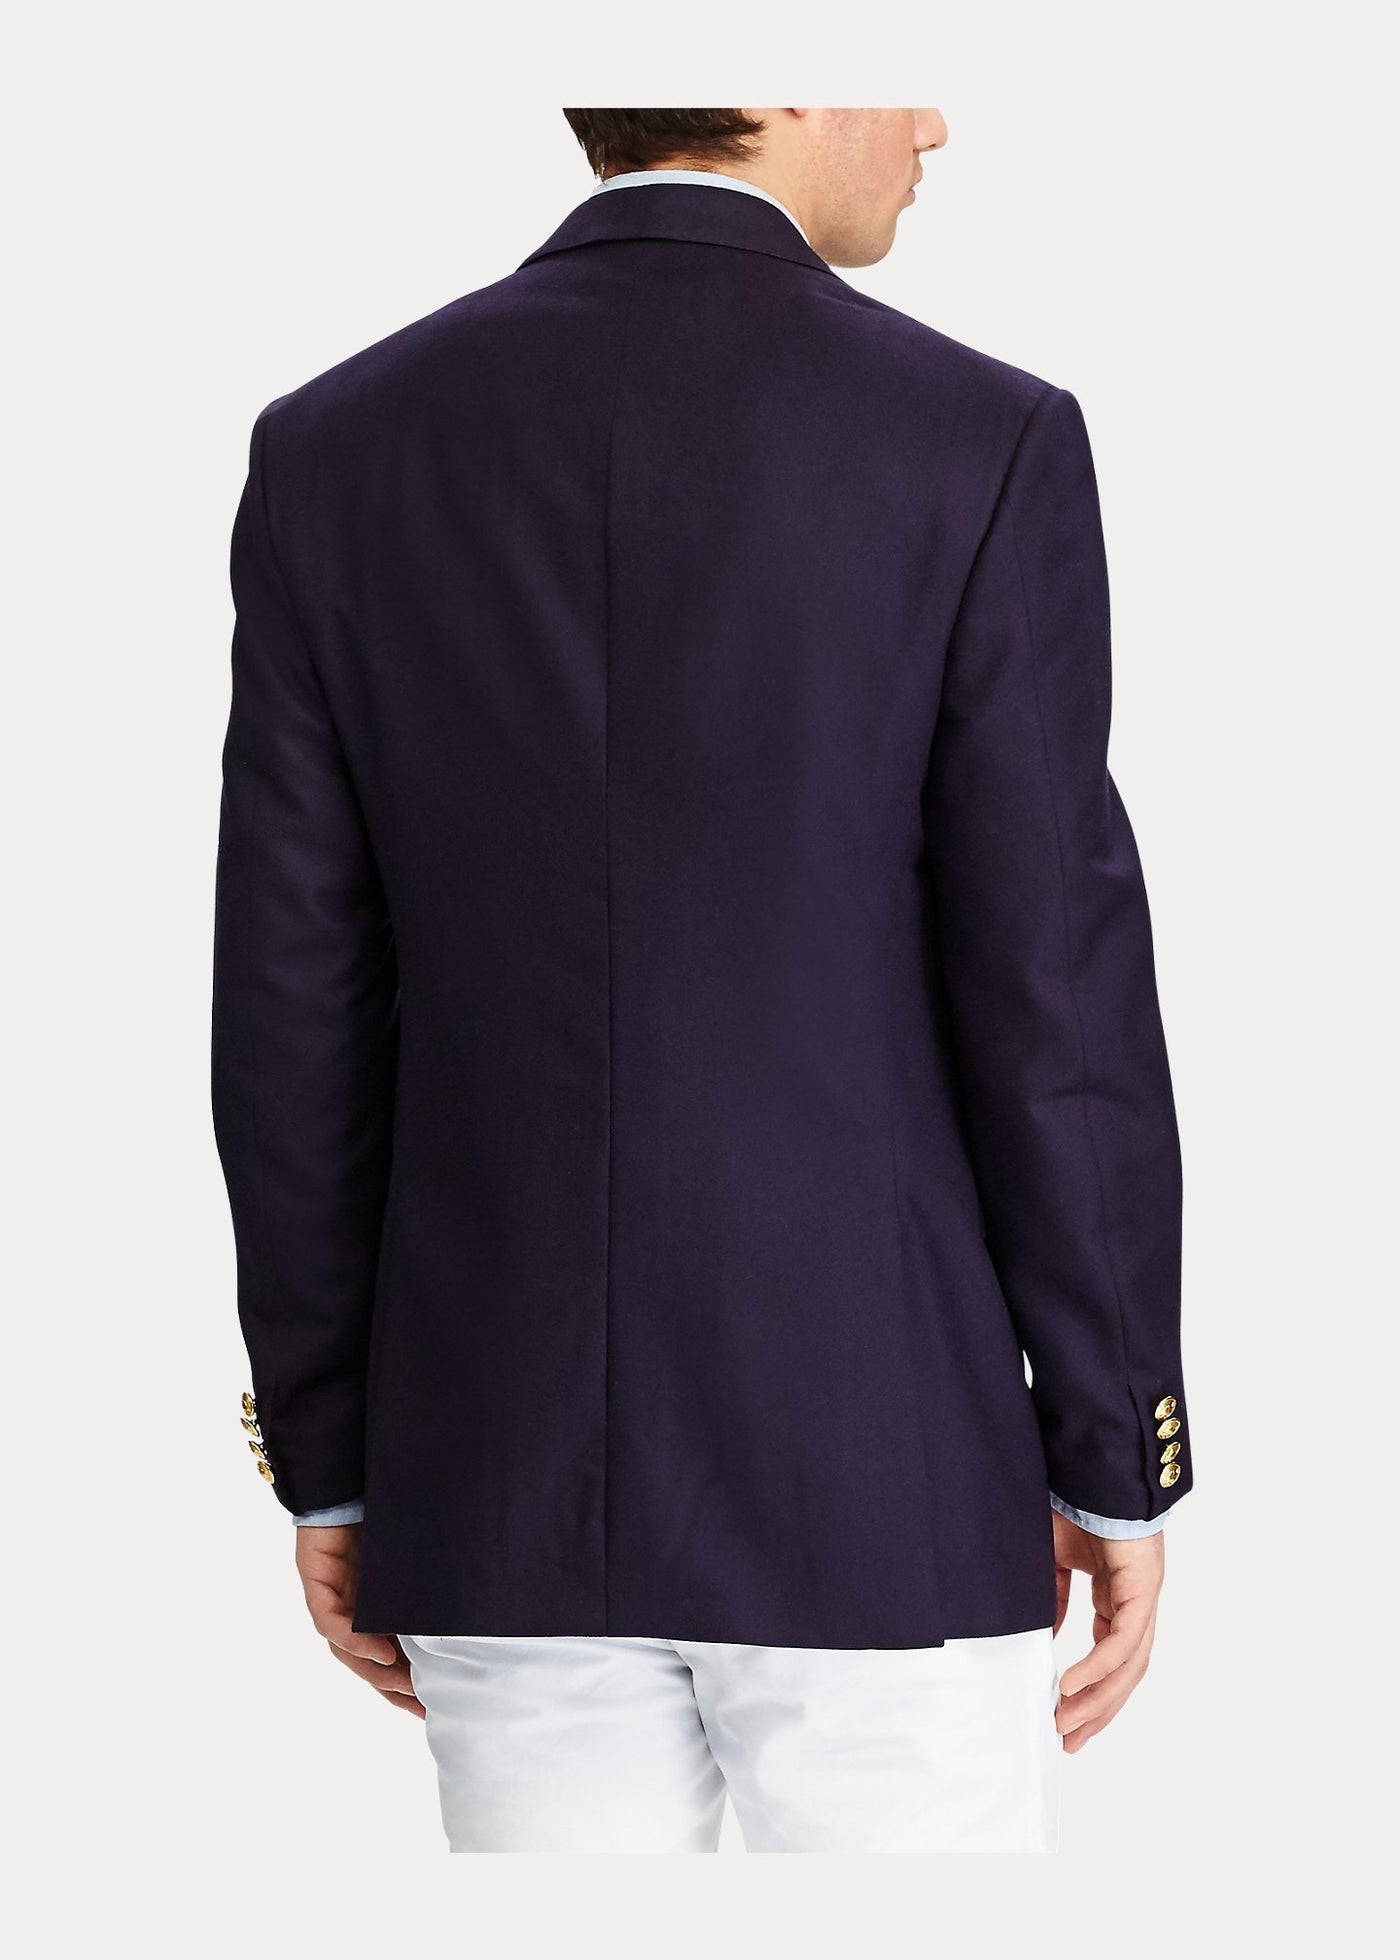 Polo Ralph Lauren Blazer Polo en laine chamoisée - Navy - Lothaire boutiques (6949422563493)